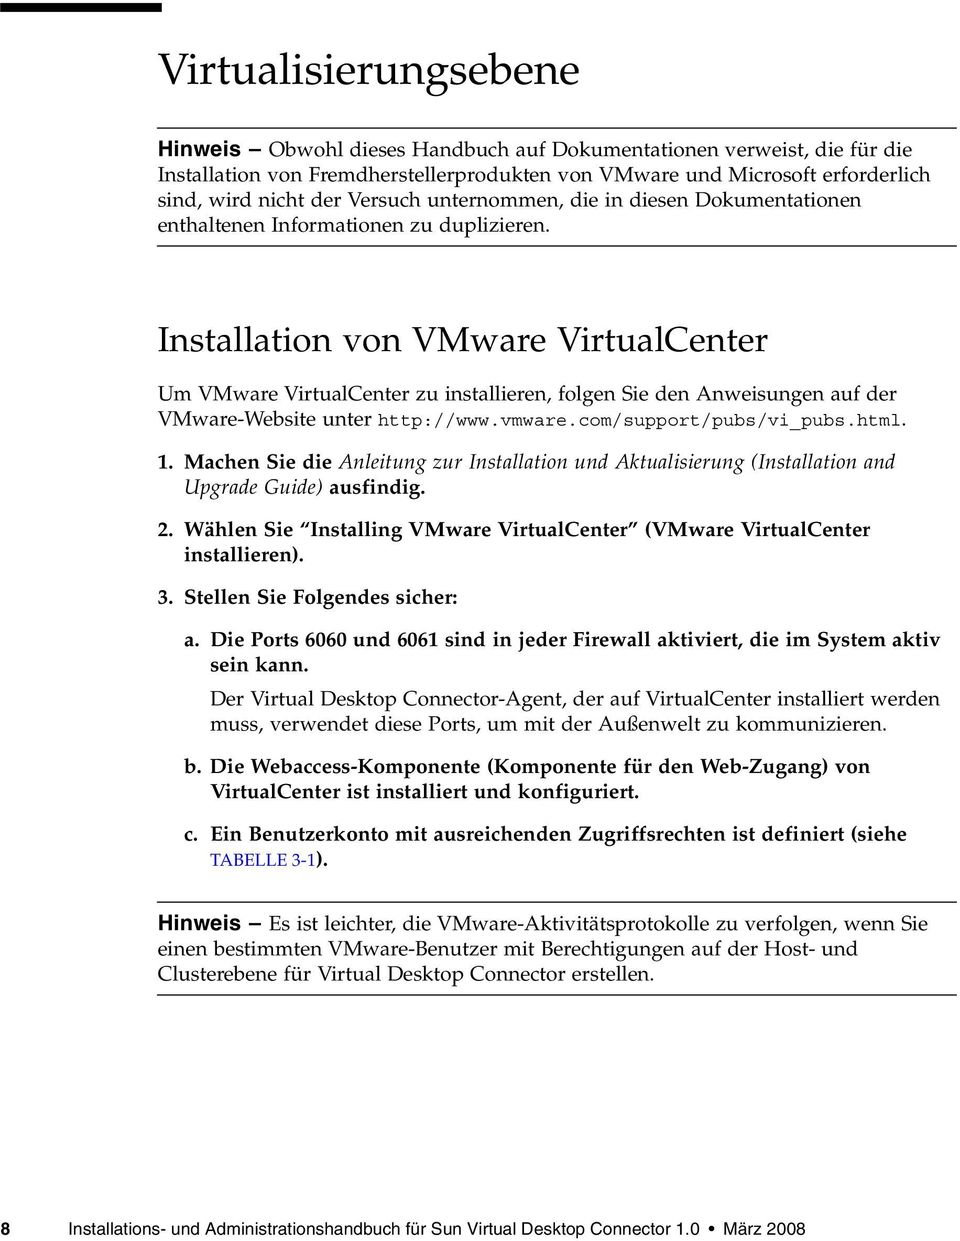 Installation von VMware VirtualCenter Um VMware VirtualCenter zu installieren, folgen Sie den Anweisungen auf der VMware-Website unter http://www.vmware.com/support/pubs/vi_pubs.html. 1.